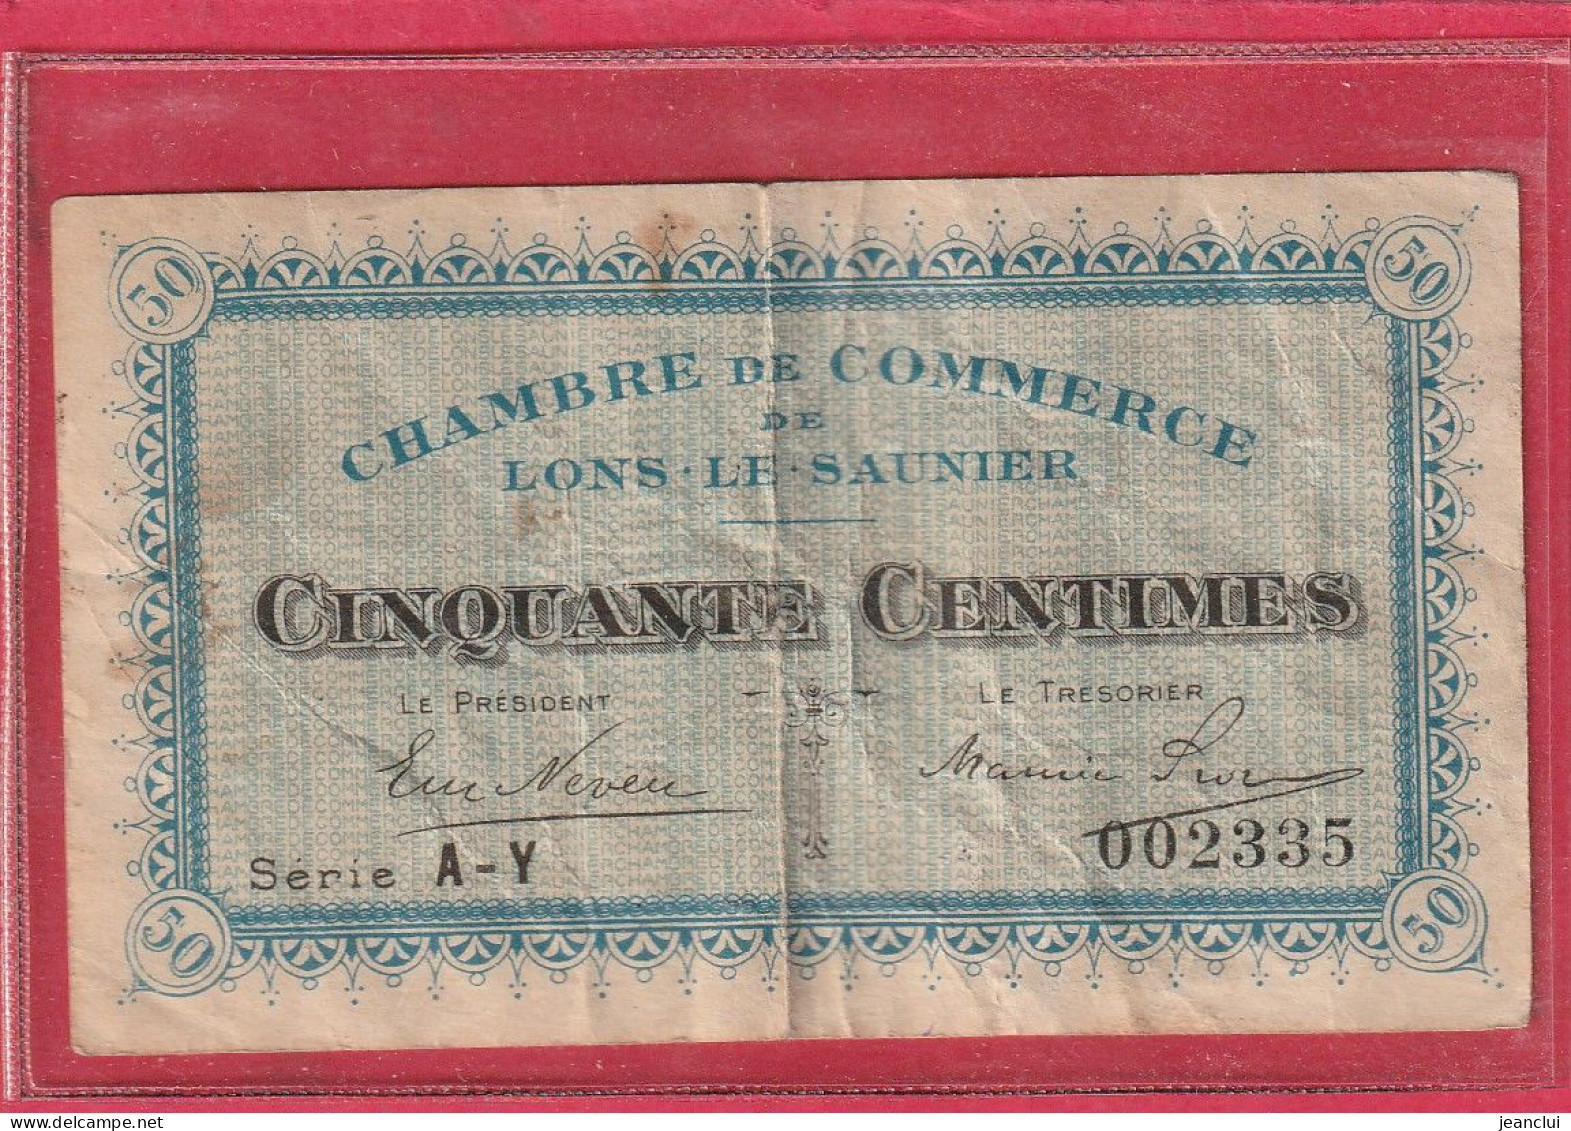 CHAMBRE DE COMMERCE DE LONS-LE-SAUNIER . 50 Centimes   . SERIE  A-Y  .  N° 002335  .  2 SCANNES  .  BILLET USITE - Handelskammer